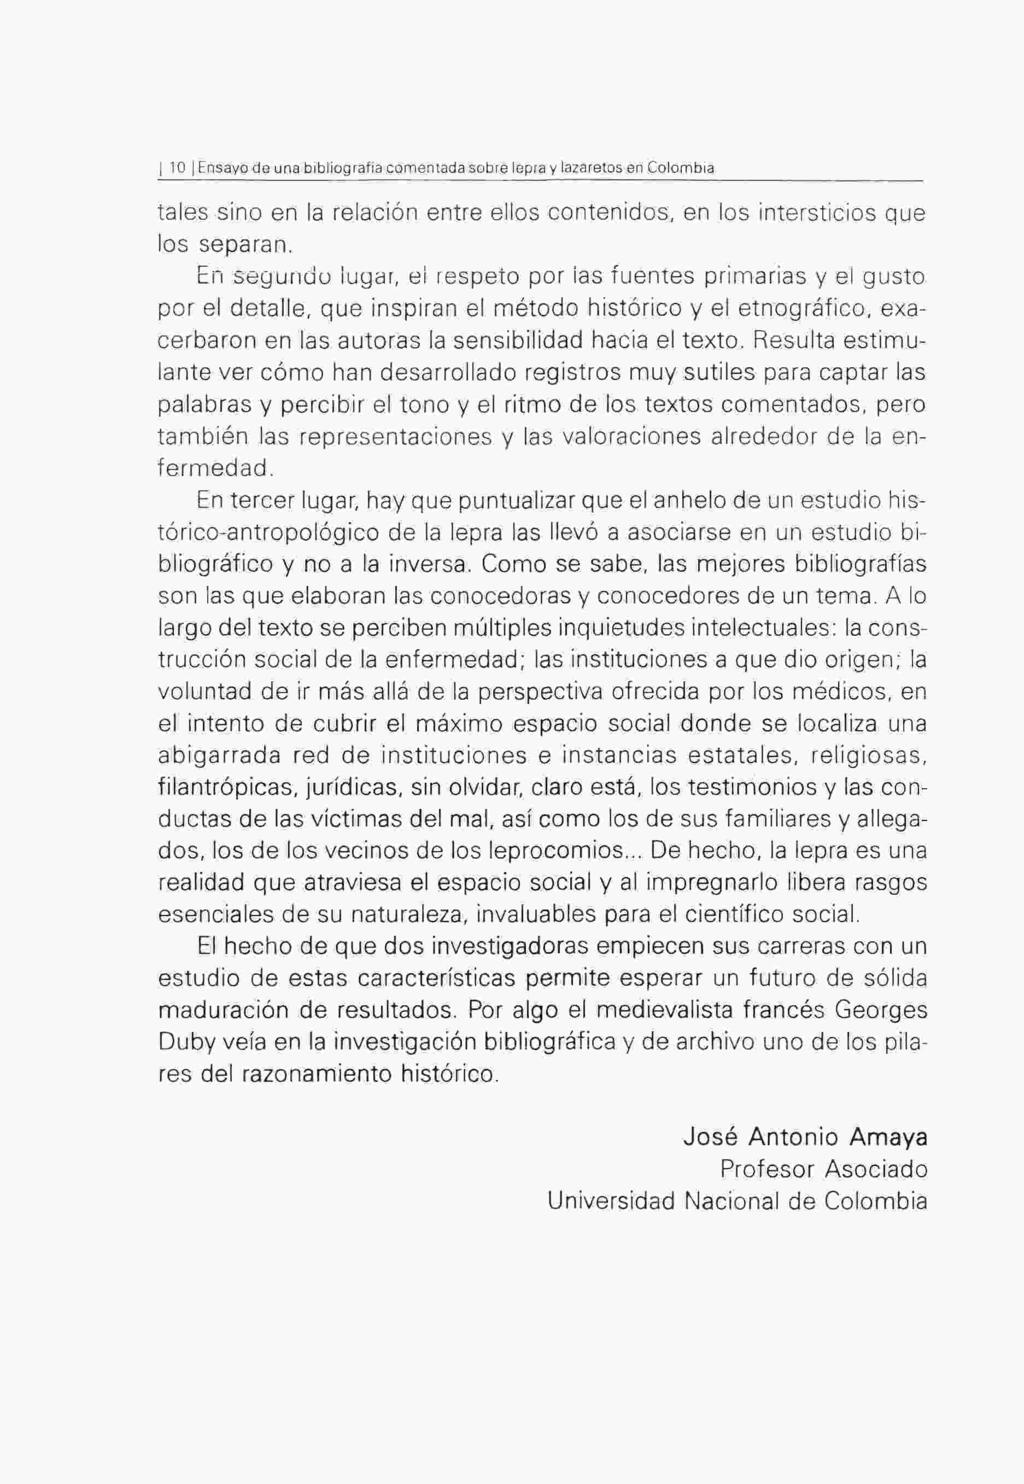 I 10 j Ensayo de una bibliografía comentada sobre lepra y lazaretos en Colombia tales sino en la relación entre ellos contenidos, en los intersticios que ios separan.